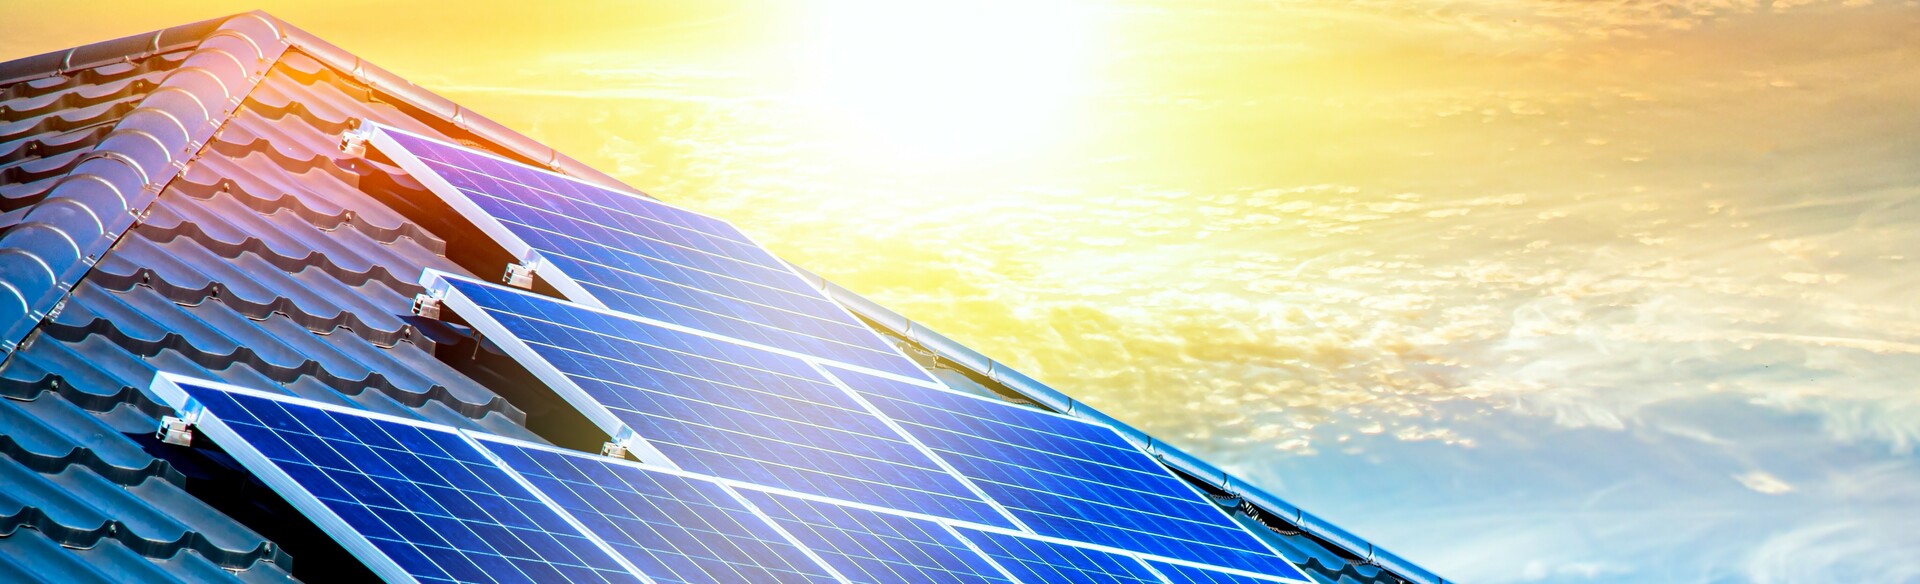 Eine fertig installierte Photovoltaikanlage auf dem Dach eines Kunden, welche Ökostrom erzeugt.